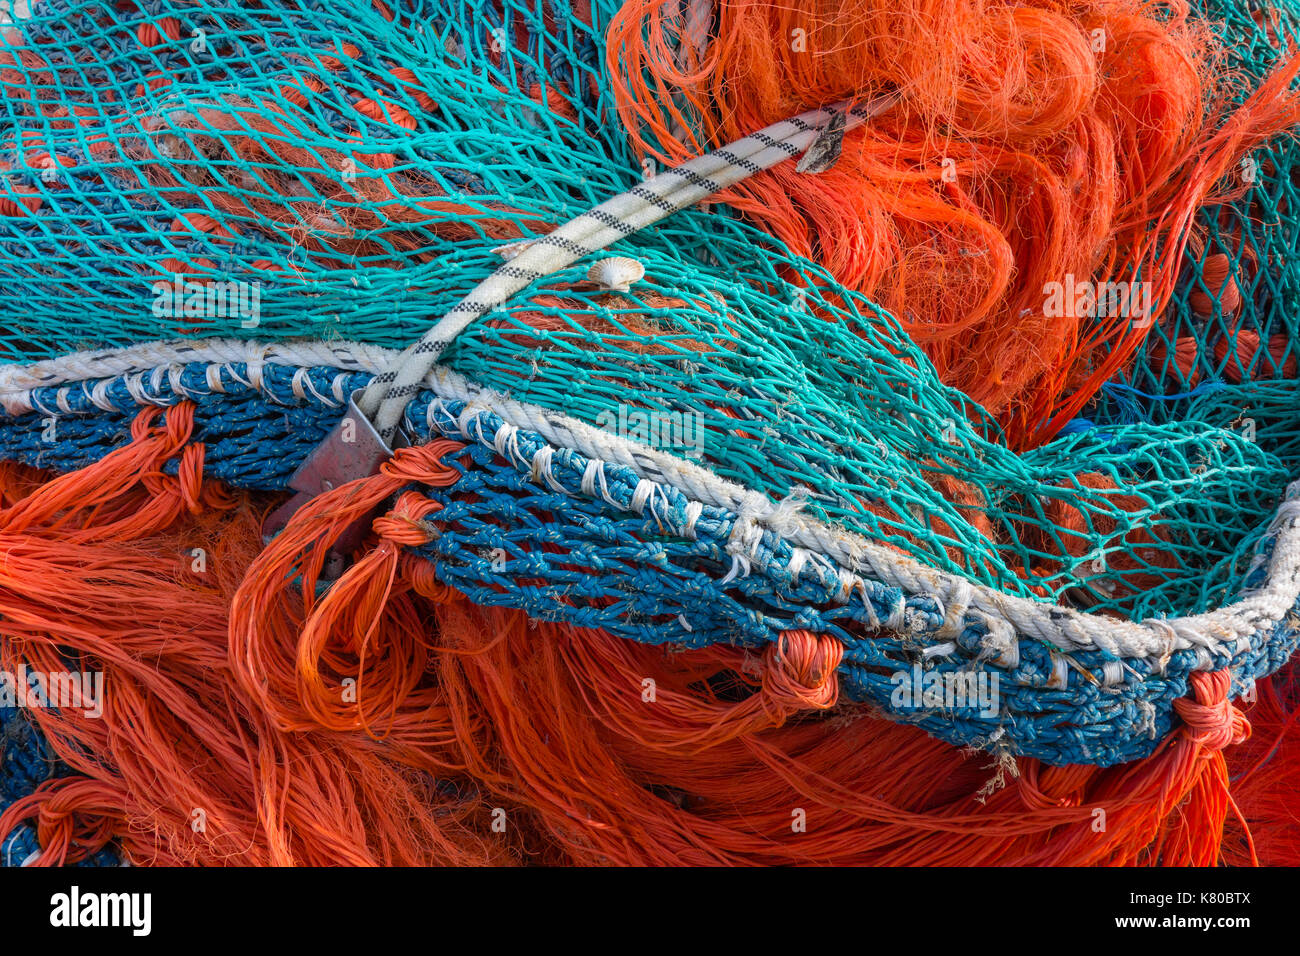 Fischernetz. In der Nähe von Pile der Fischernetze im Hafen. Hintergrund von bunten Fischen net. Grandcamp-maisy, Normandie, Frankreich. Stockfoto